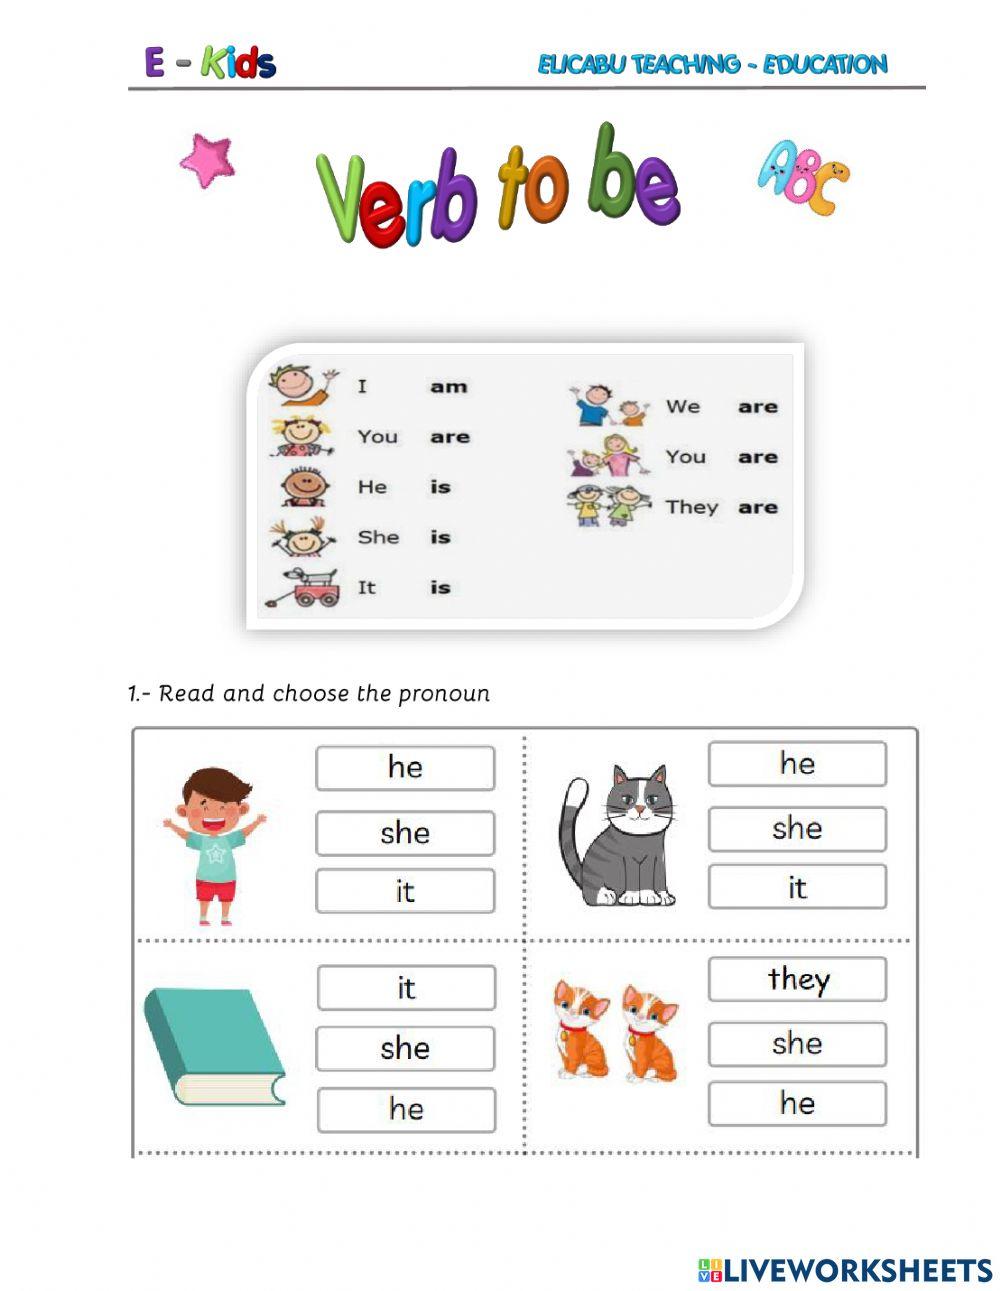 Pronouns - Verb to be